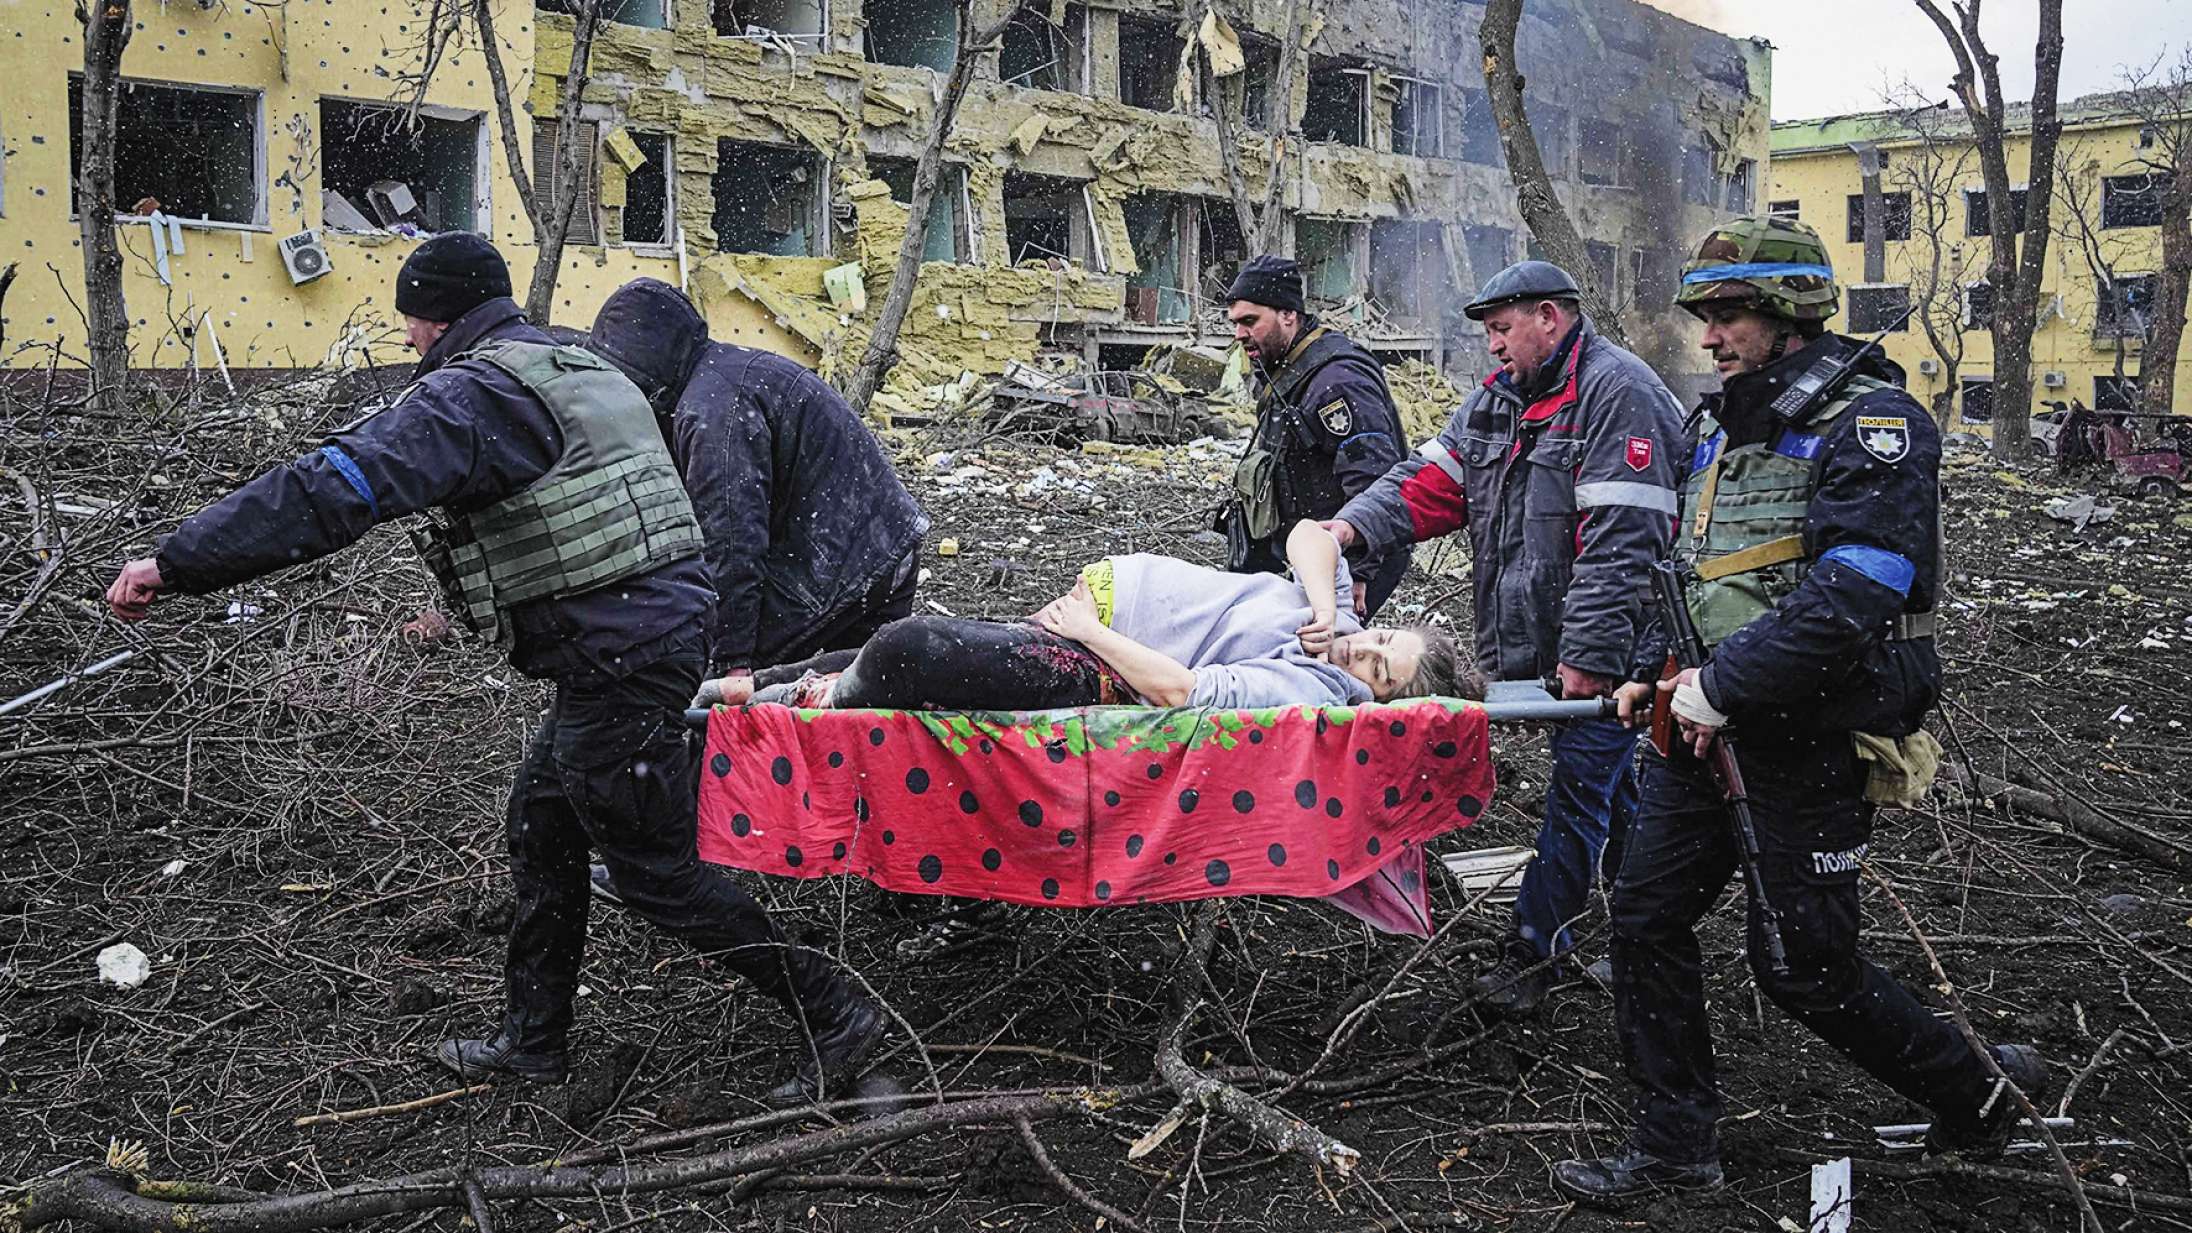 ‘20 dage i Mariupol’: Denne krigsdokumentar er en af de uhyggeligste film, jeg har set